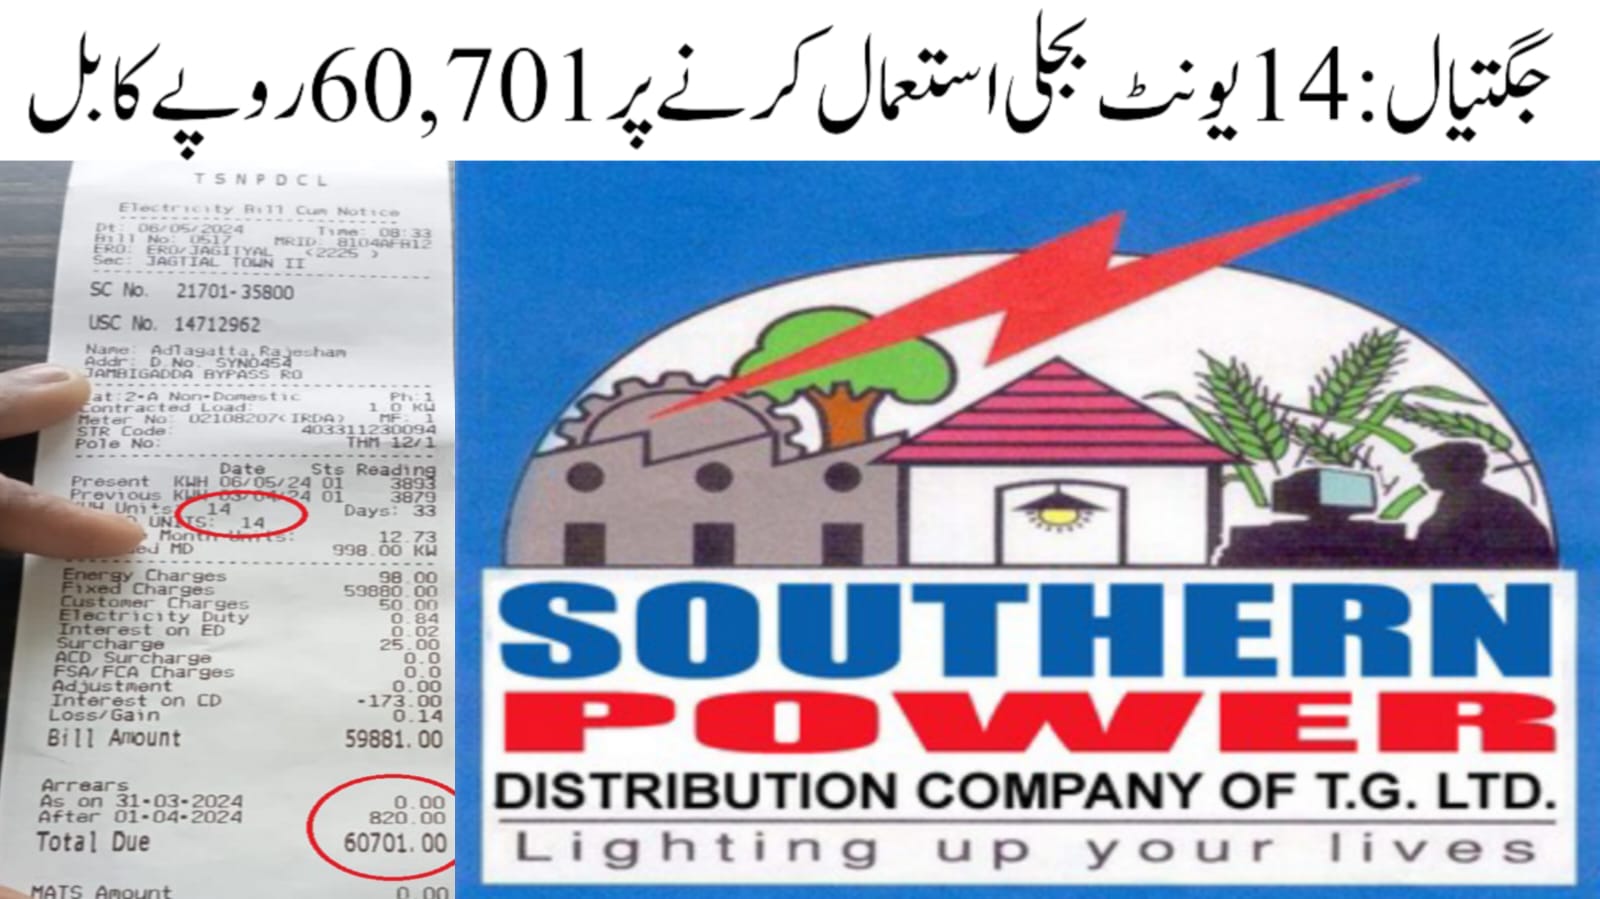 جگتیال میں صارف کو 14 یونٹ بجلی استعمال کرنے پر60,701 روپے کا بل 